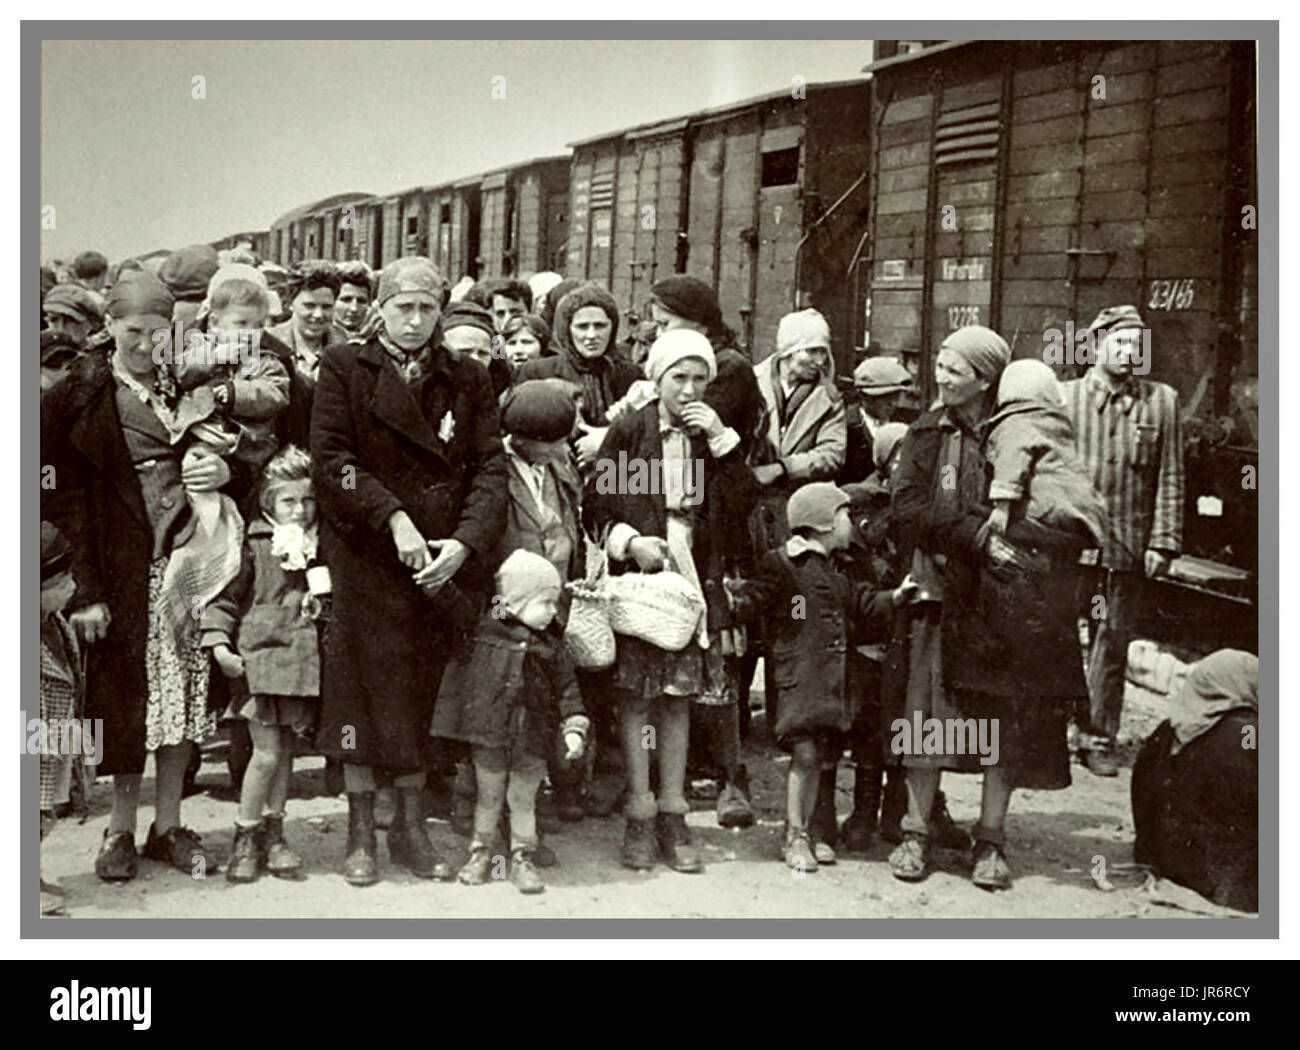 Les femmes et les enfants juifs d'Auschwitz-Birkenau Certains portant des étoiles jaunes désignés nazis arrivent par camions ferroviaire de base à Auschwitz-Birkenau, a WW2 camp allemand nazi de concentration. Des enfants juifs ont été le plus grand groupe déportés dans le camp. Ils ont été envoyés avec les adultes, en commençant au début de 1942, dans le cadre de la "solution finale de la question juive" (l'ensemble de la destruction de la population juive de l'Europe...de concentration d'Auschwitz a été un réseau de l'allemand nazi de concentration et d'extermination camps gérés par le Troisième Reich en zones annexées par l'Allemagne nazie pendant la Seconde Guerre mondiale. Banque D'Images